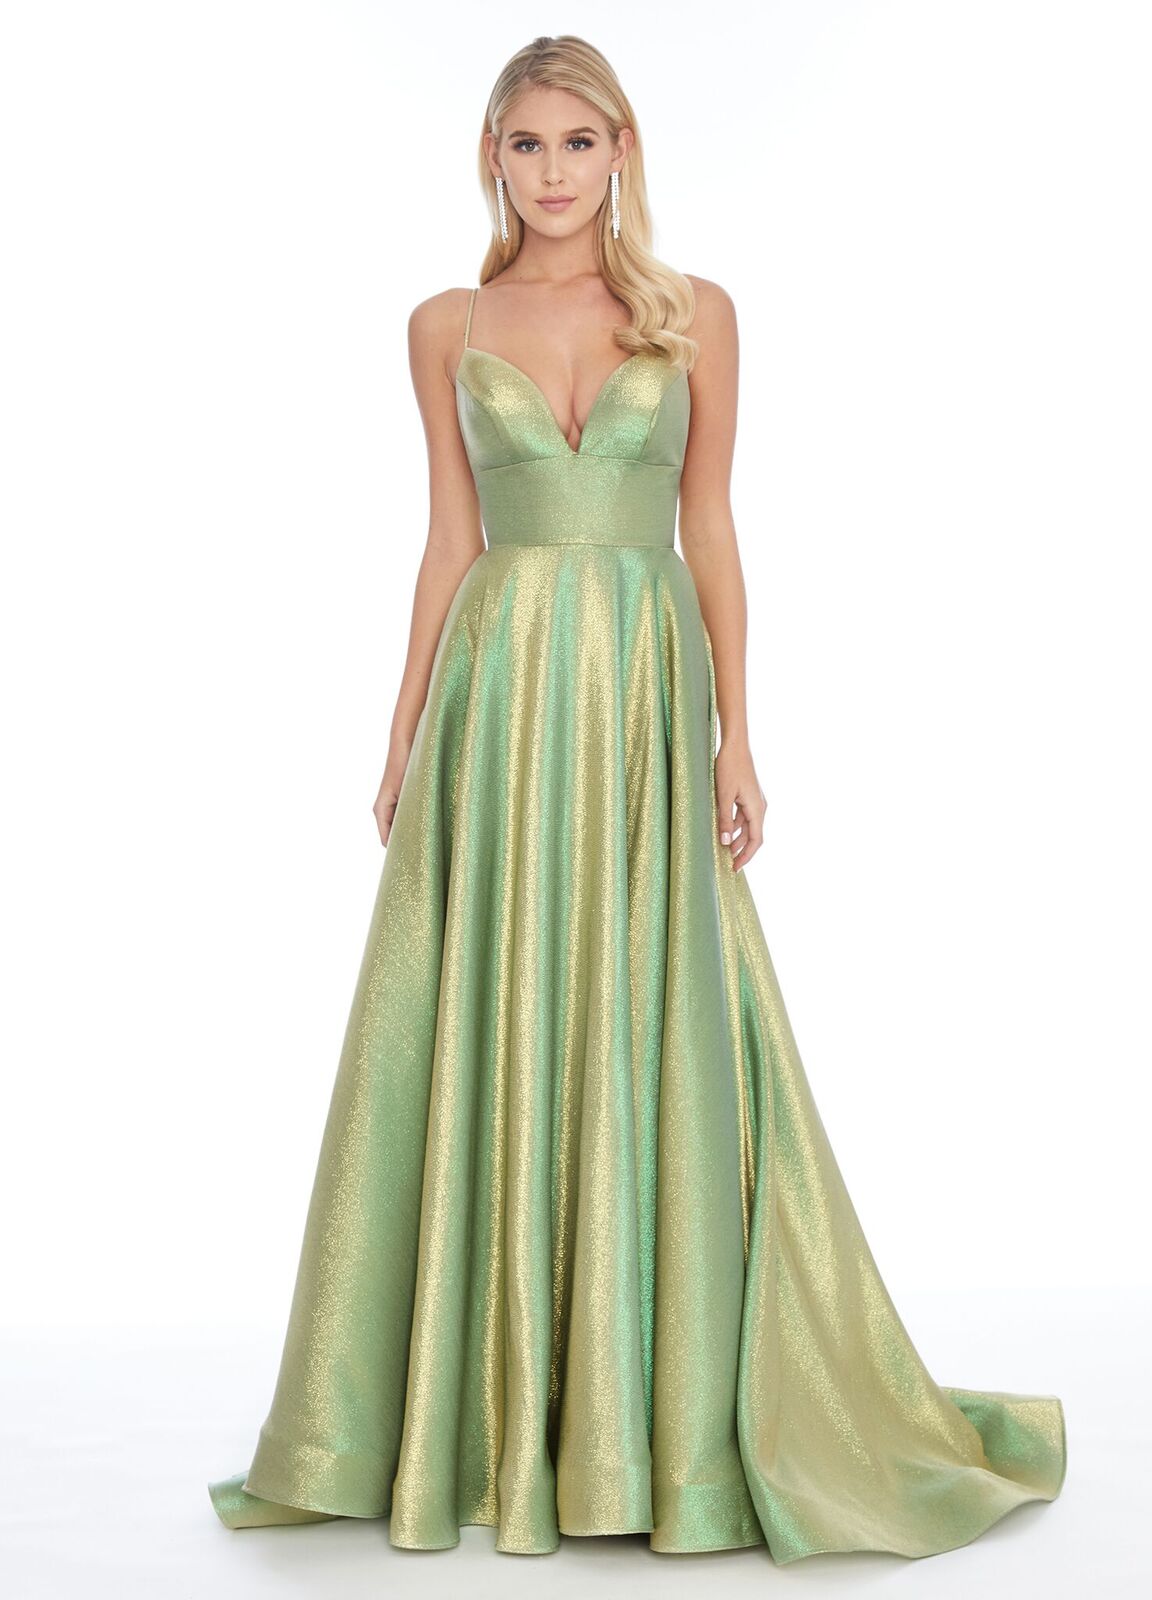 Ashley Lauren 1937 Lime/Gold Prom Dress sz 12, 14 Metallic shimmer v neckline